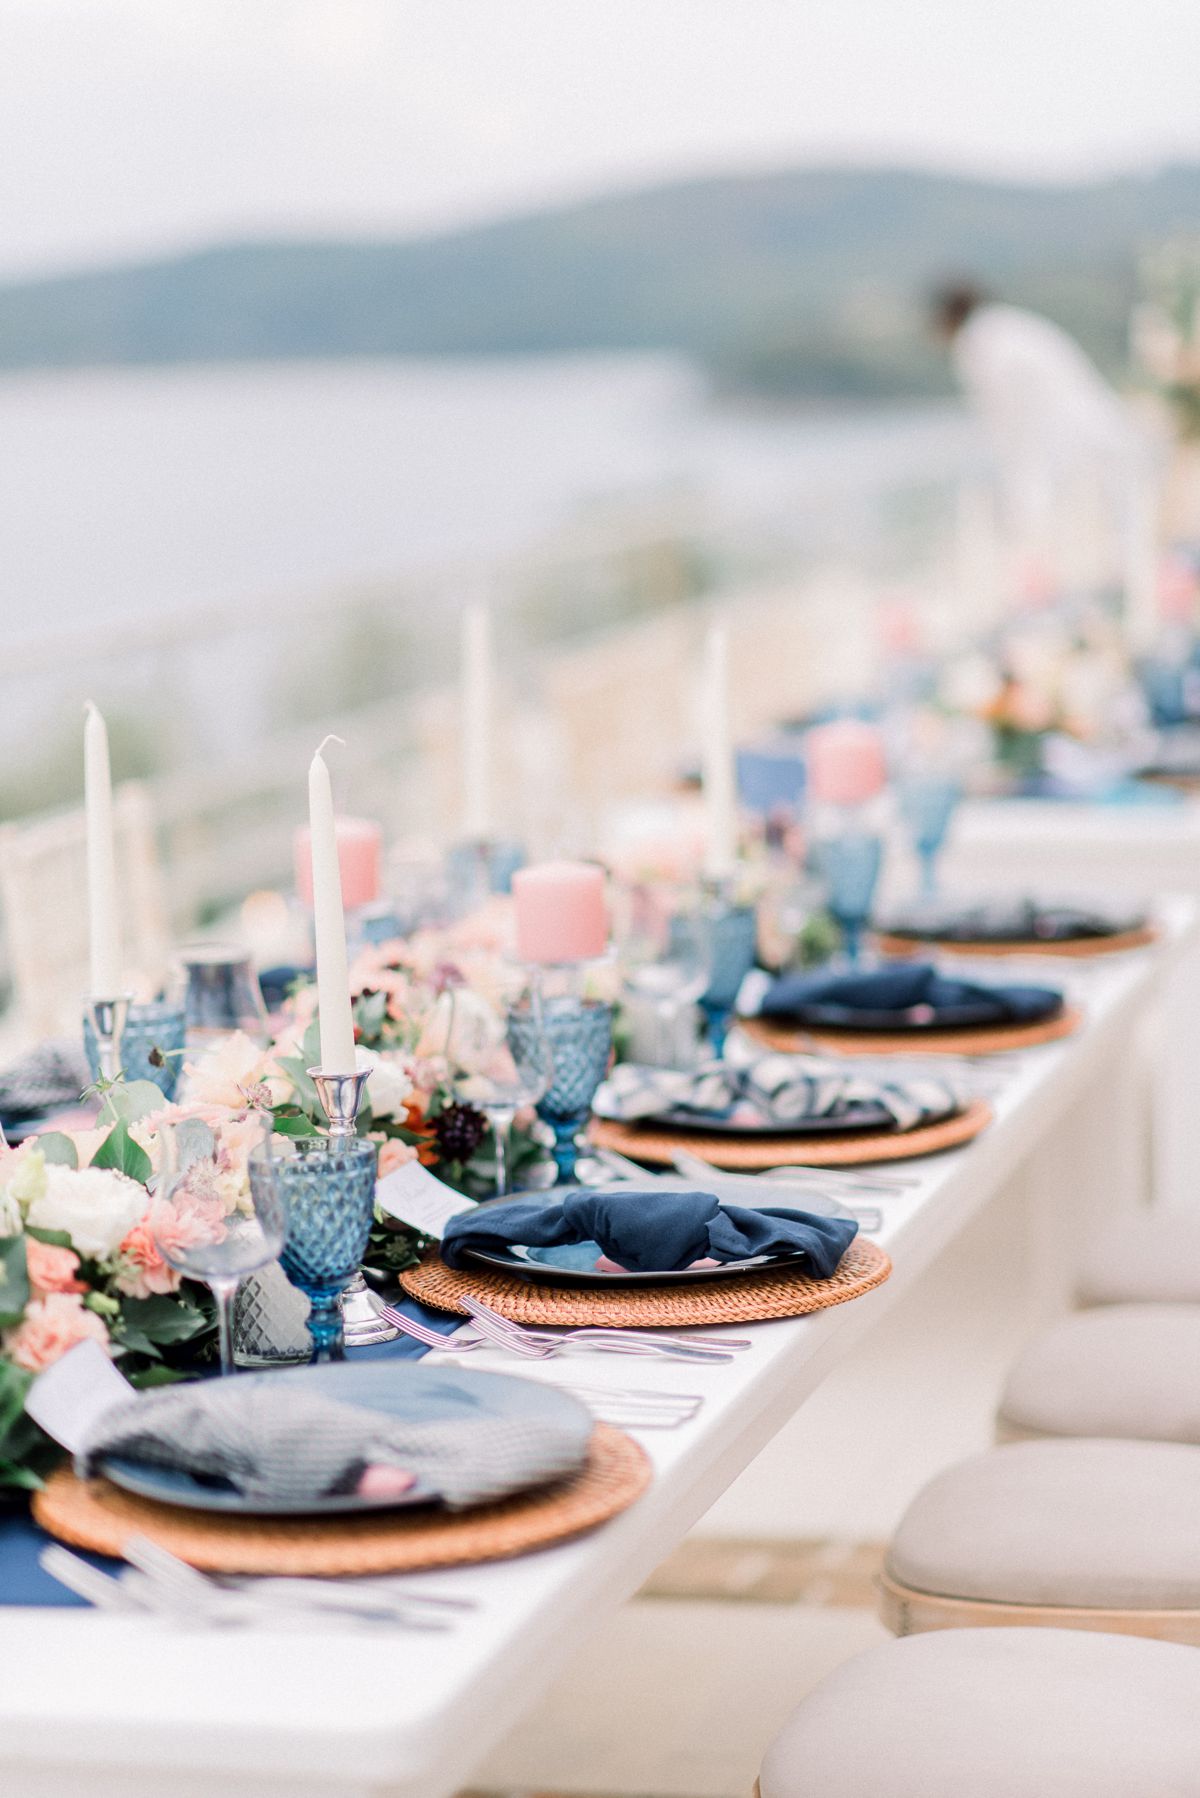 details of set up at corfu wedding